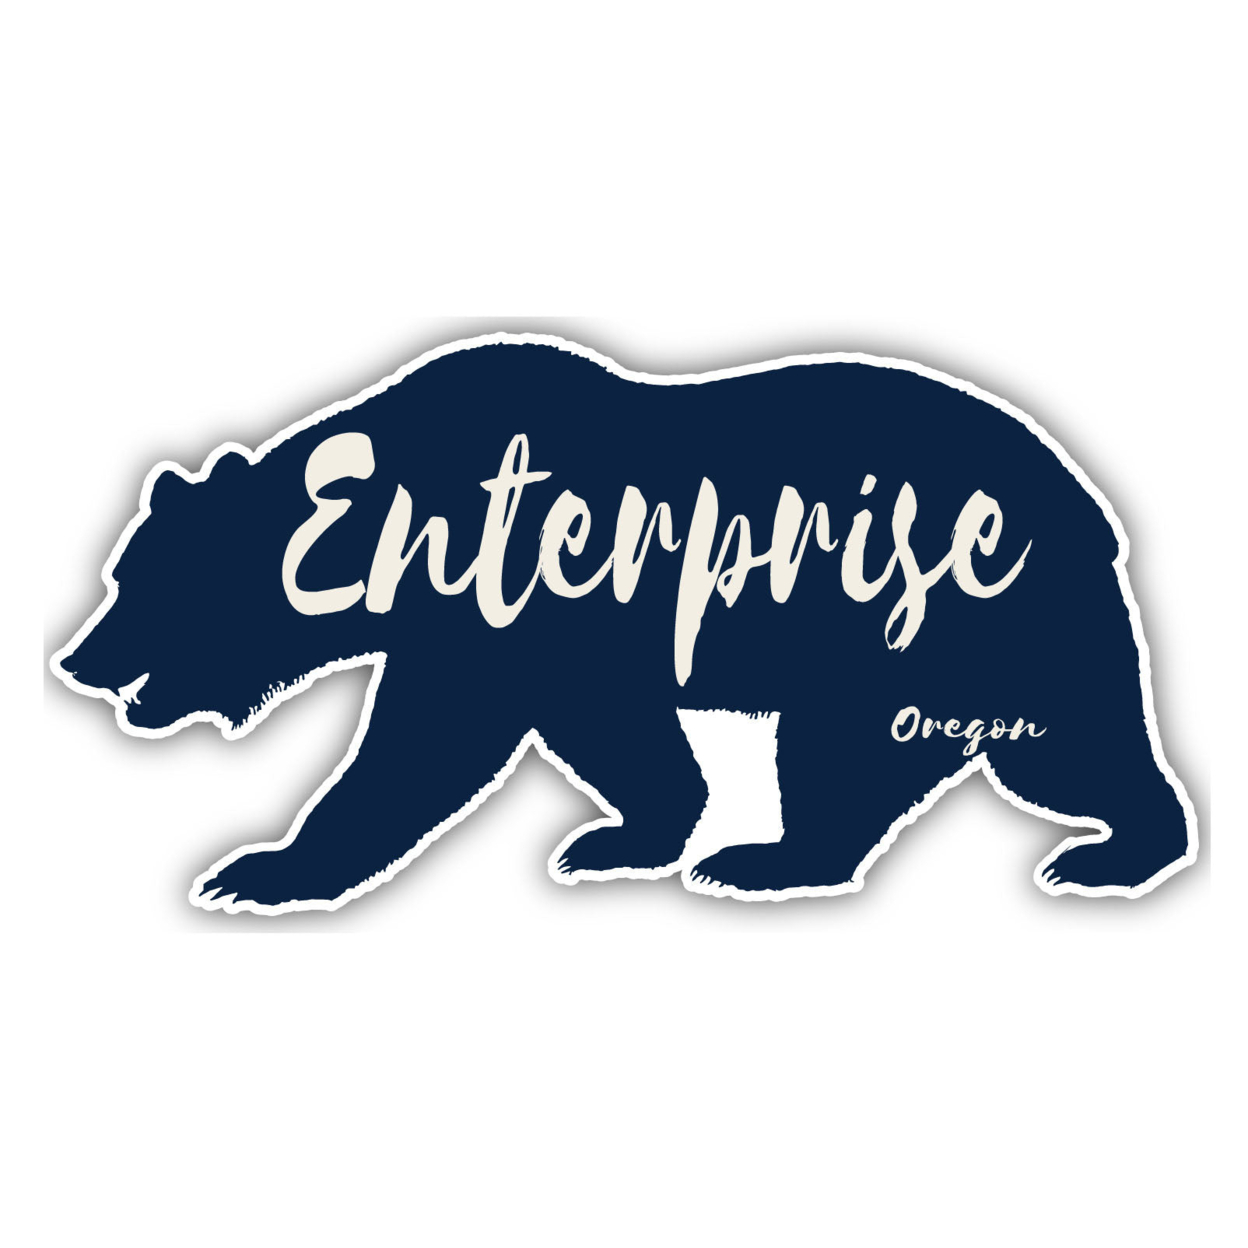 Enterprise Oregon Souvenir Decorative Stickers (Choose Theme And Size) - Single Unit, 2-Inch, Bear